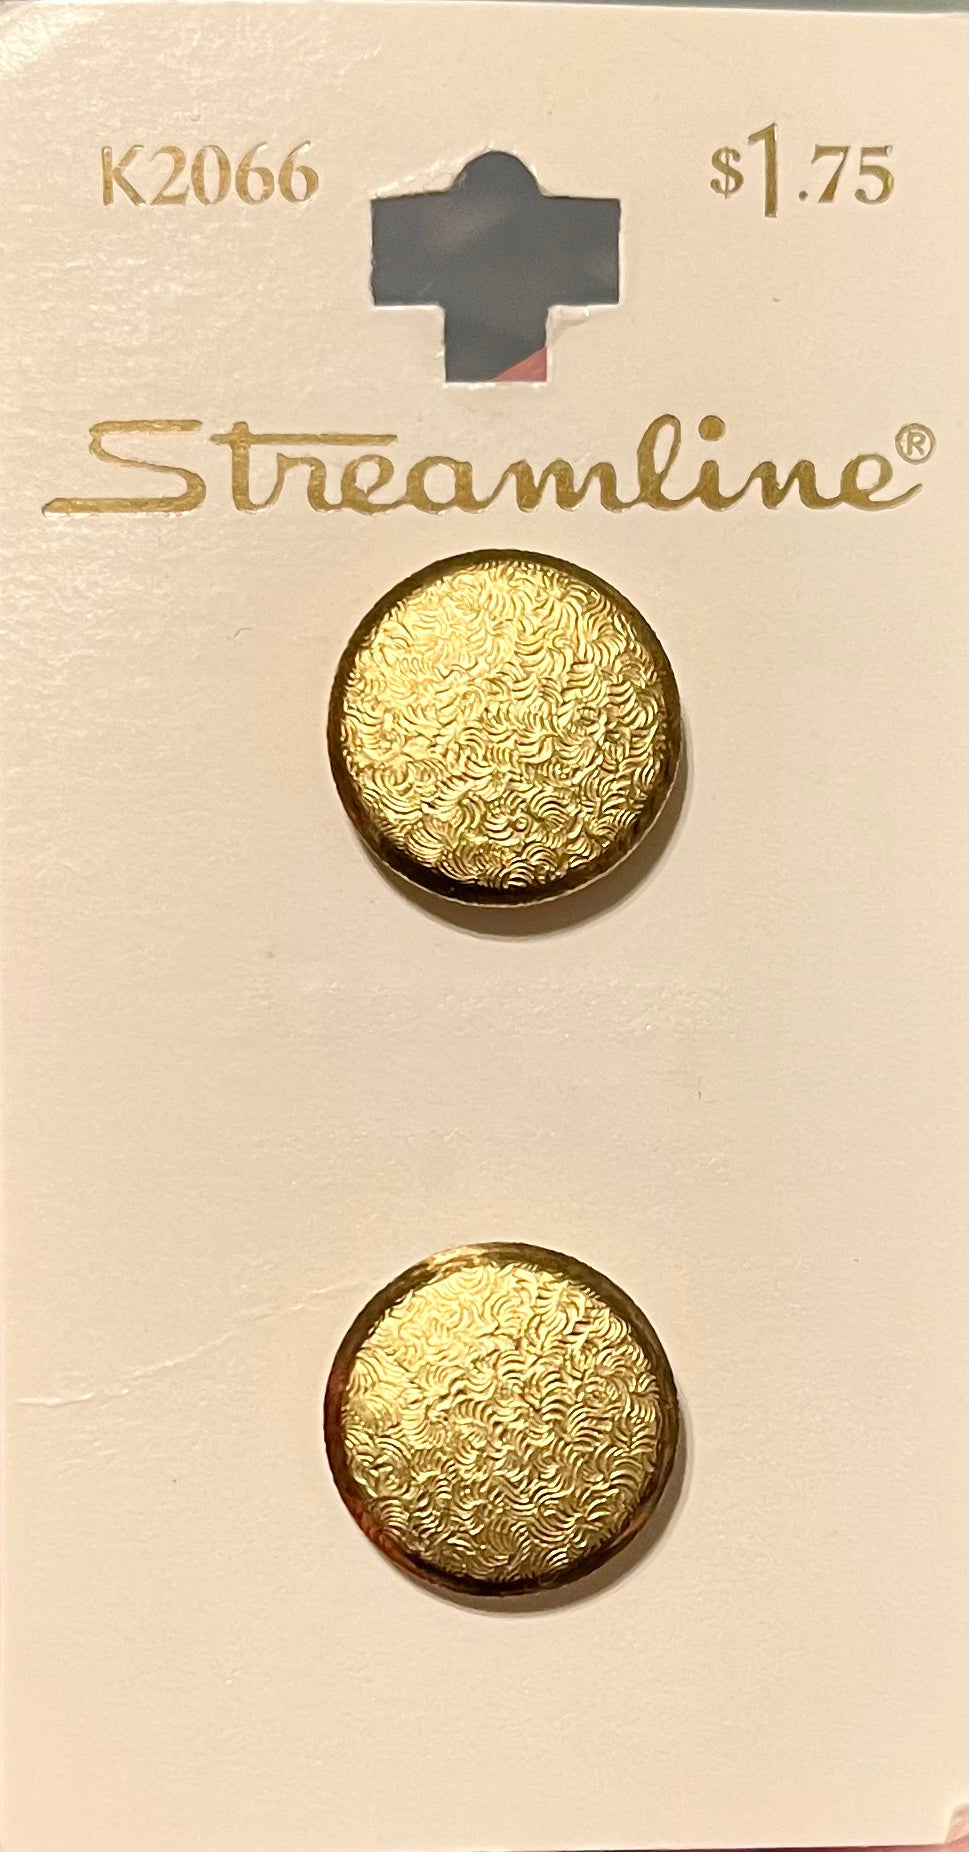 Streamline K2066 Gold Button Pair